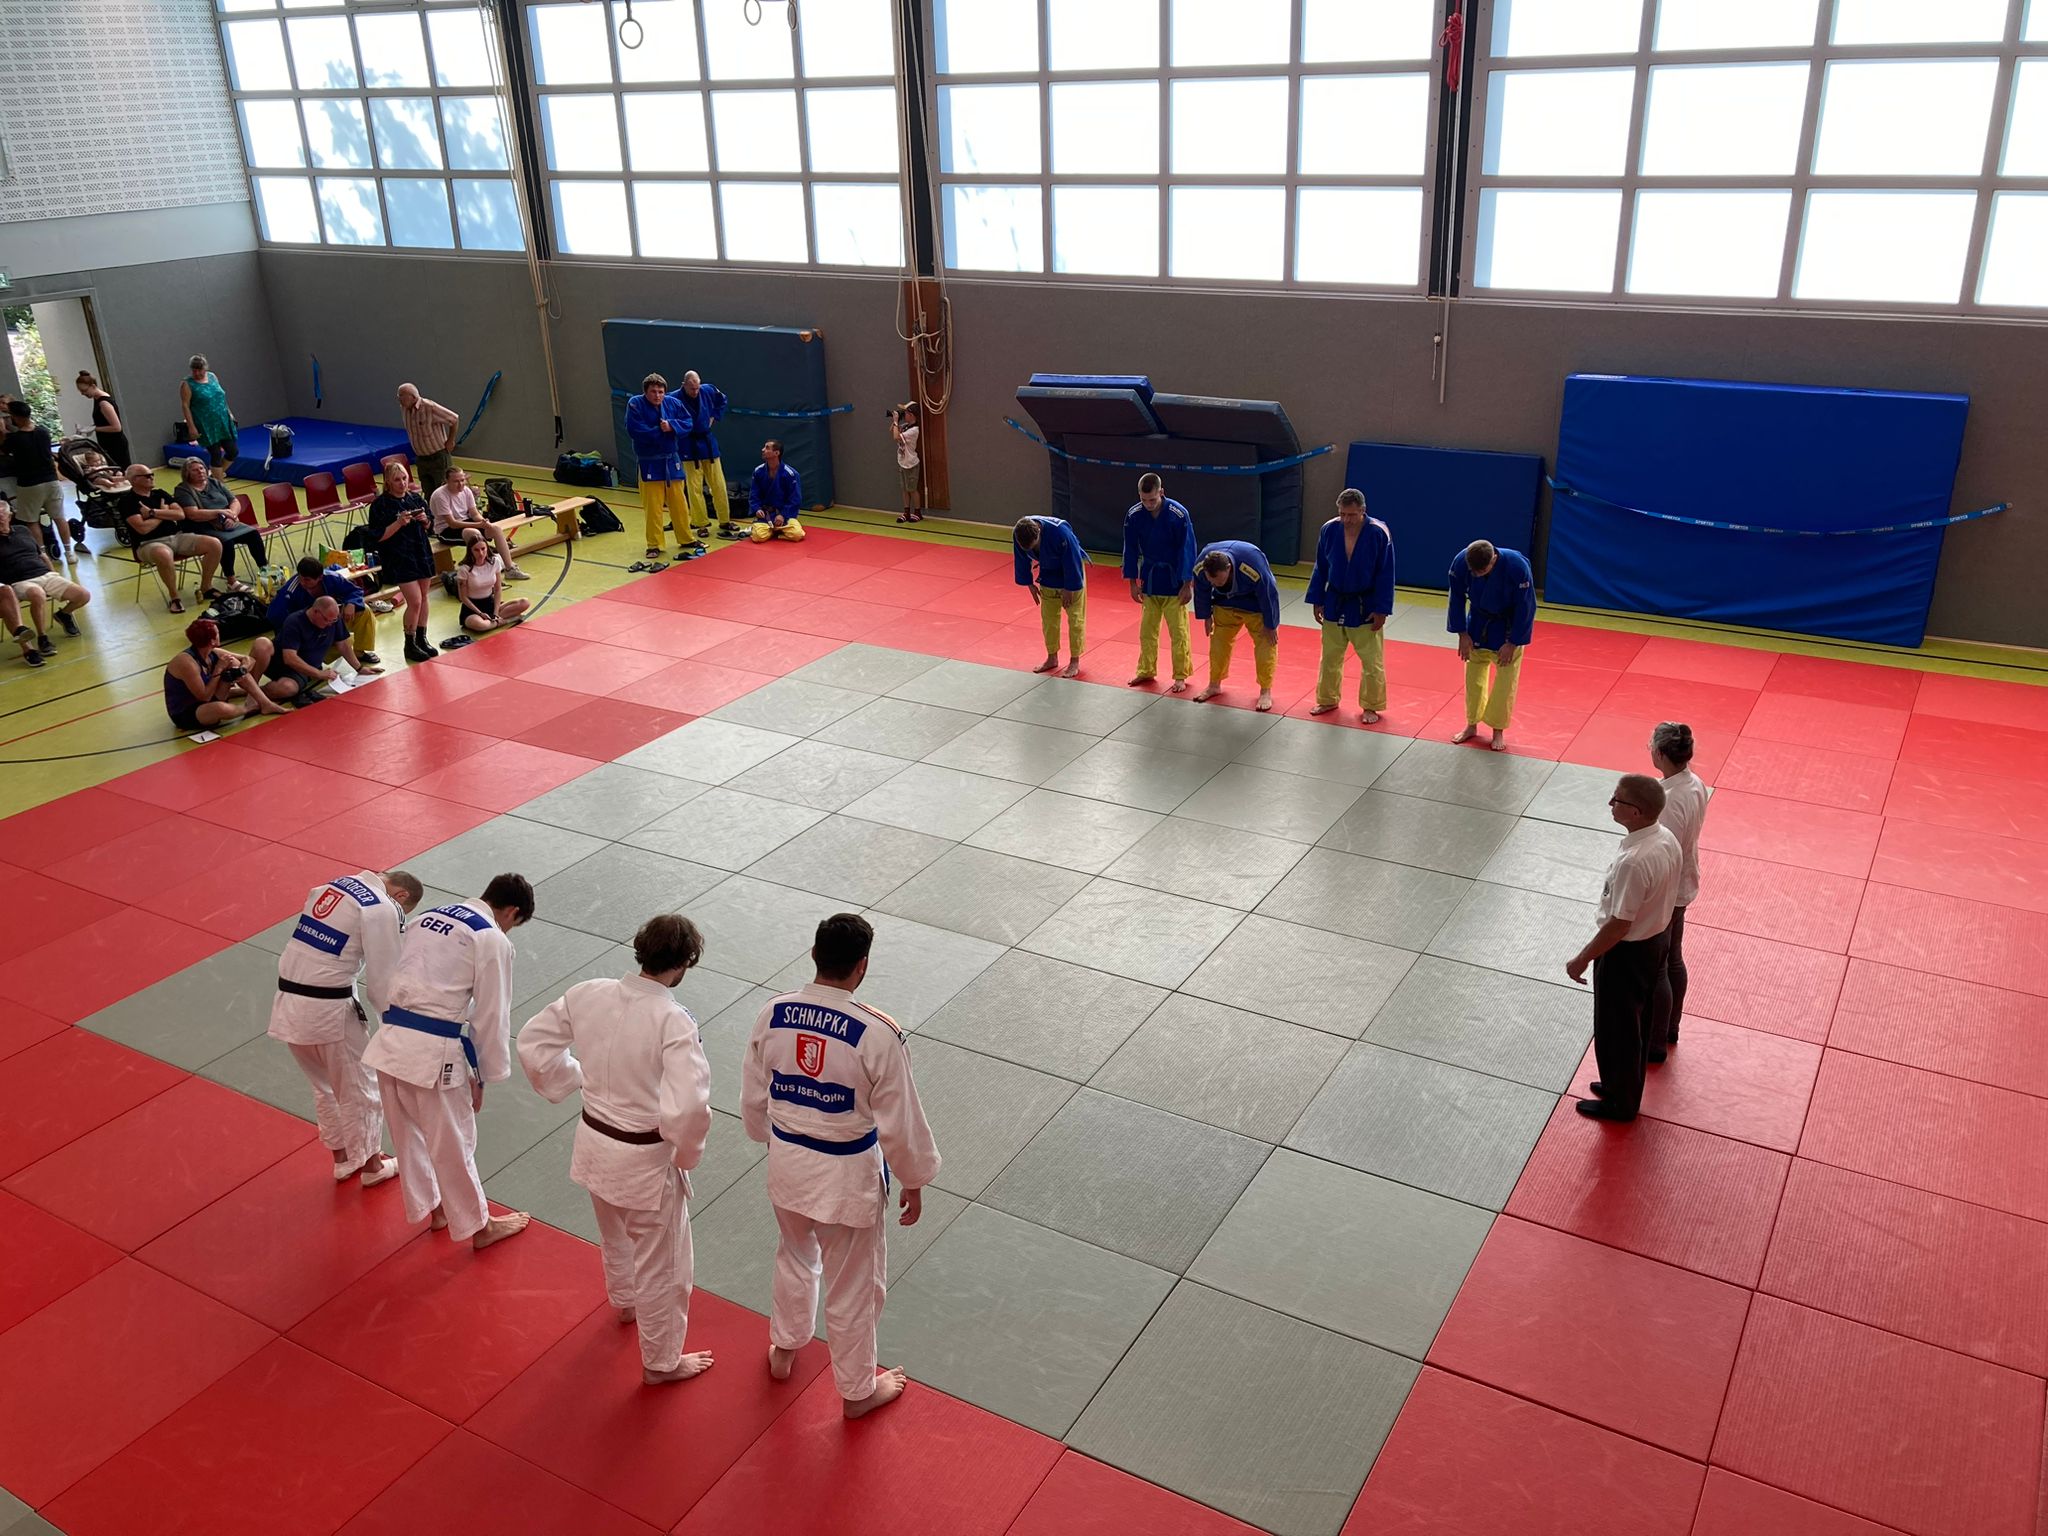 Hinrunde gegen die Judoka aus Rauxel